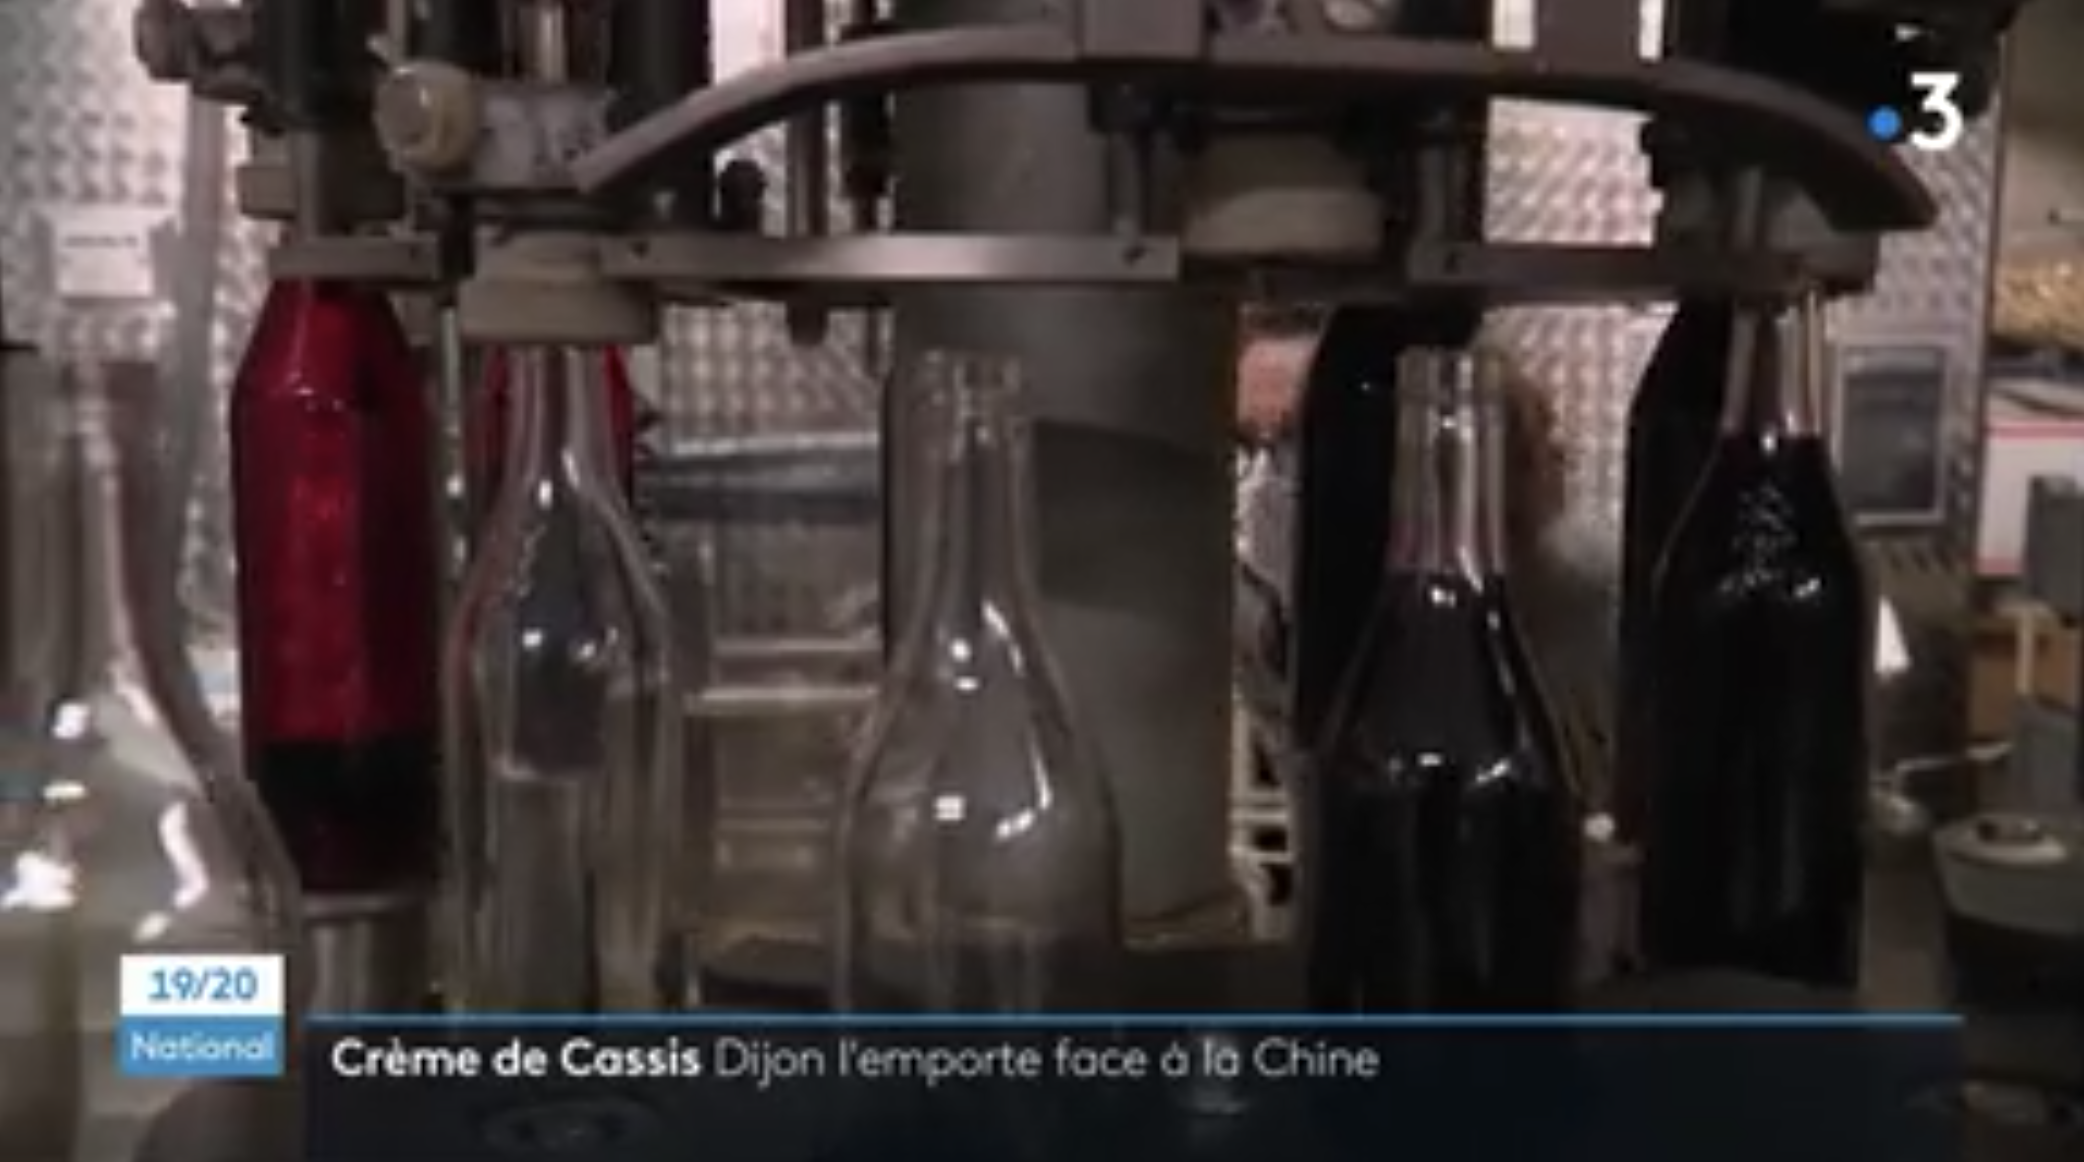 Dijon : les producteurs de crème de cassis gagnent leur combat face aux industriels chinois